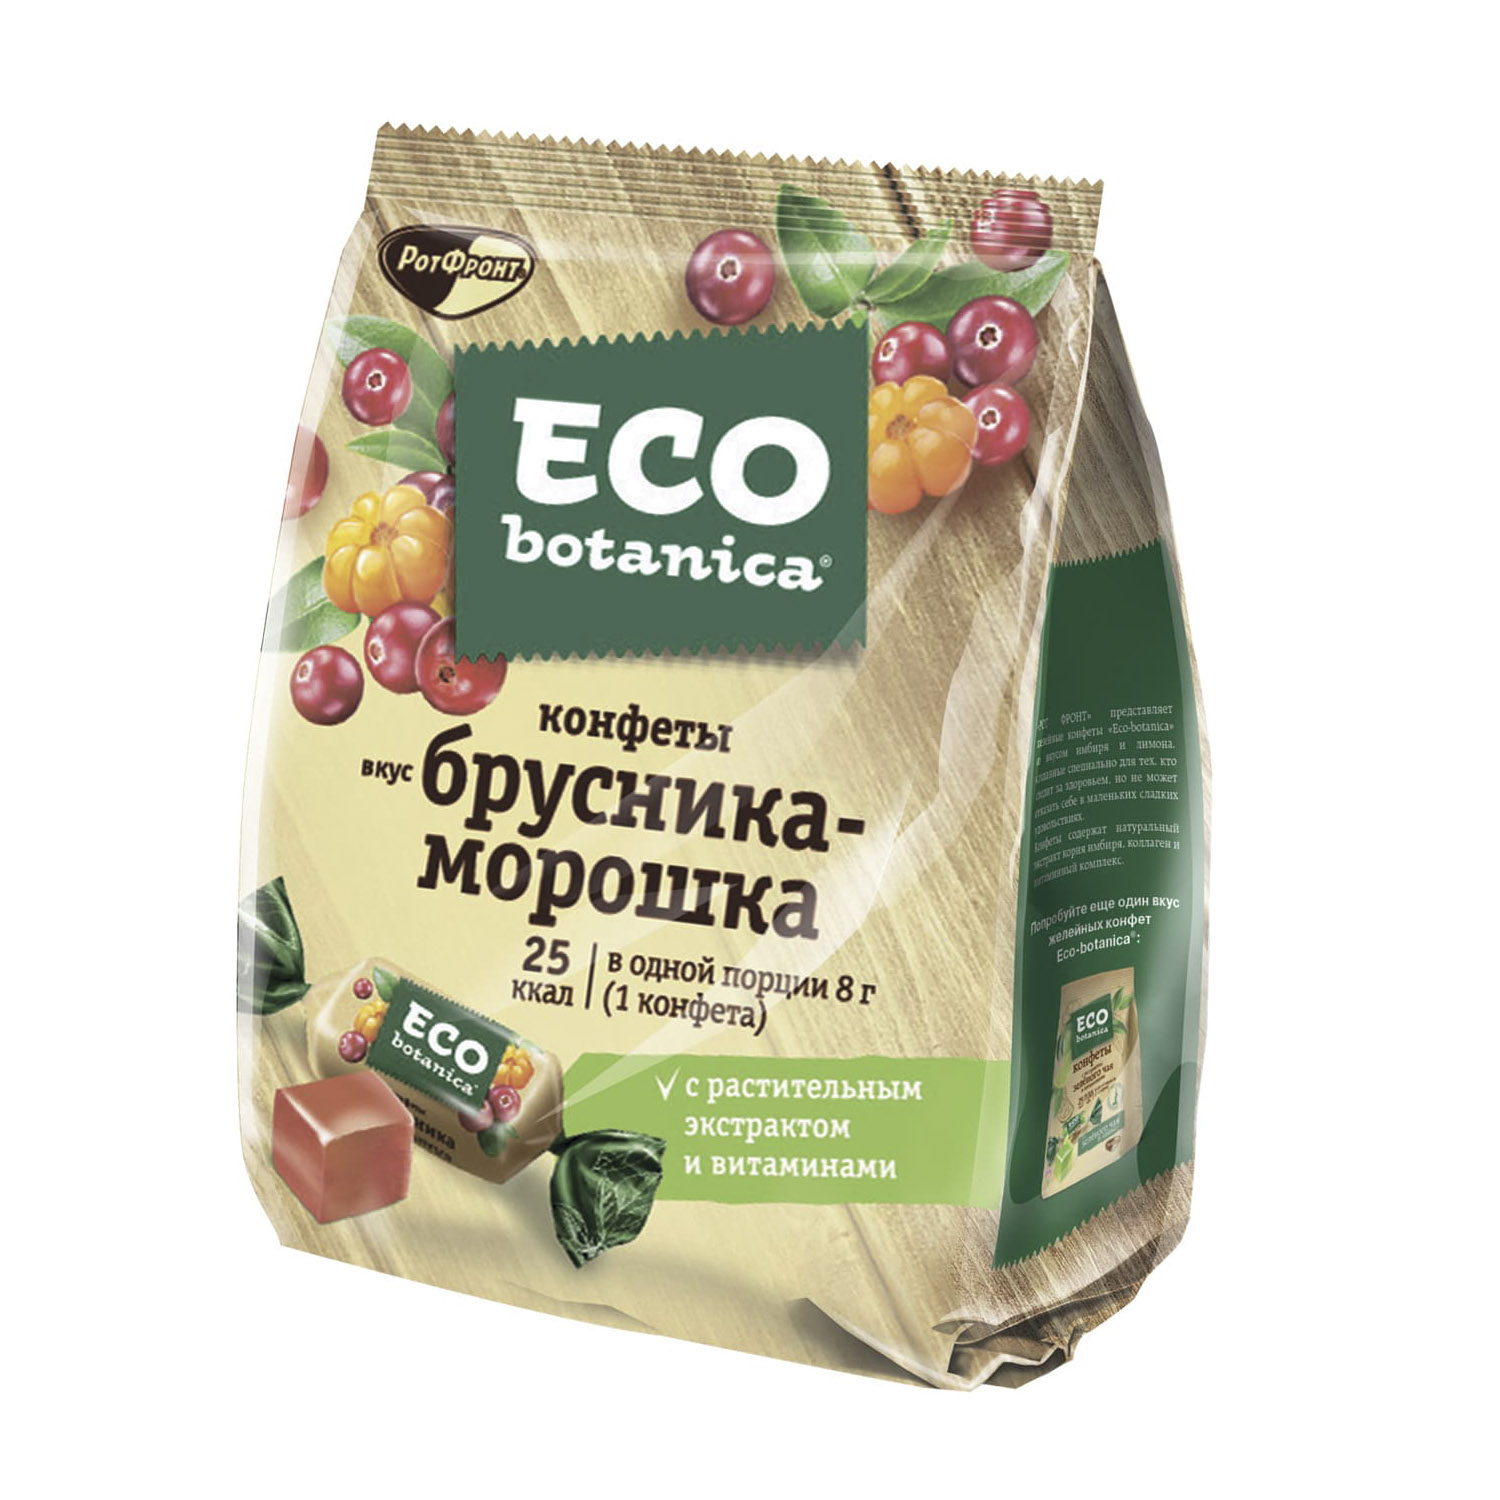 Конфеты Eco Botanica со вкусом Брусника-Морошка 200 г конфеты eco botanica смузи ананас манго 150 г